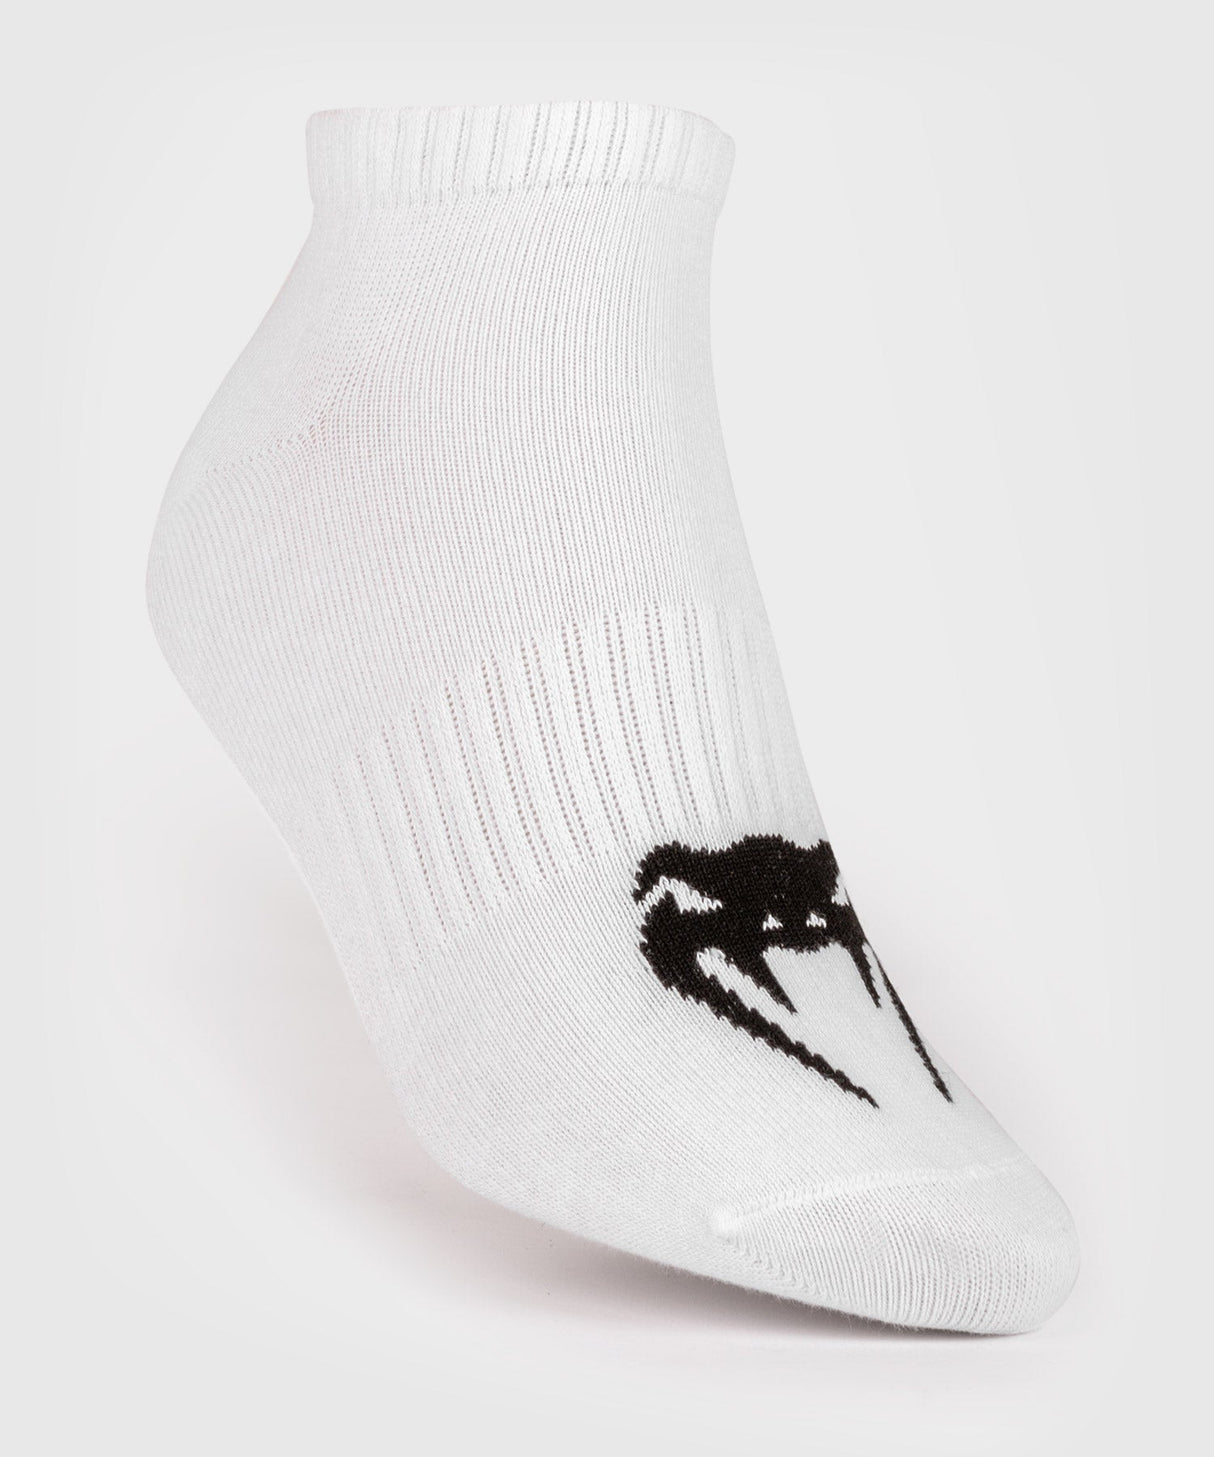 Venum Socken Classic Set - weiß/schwarz